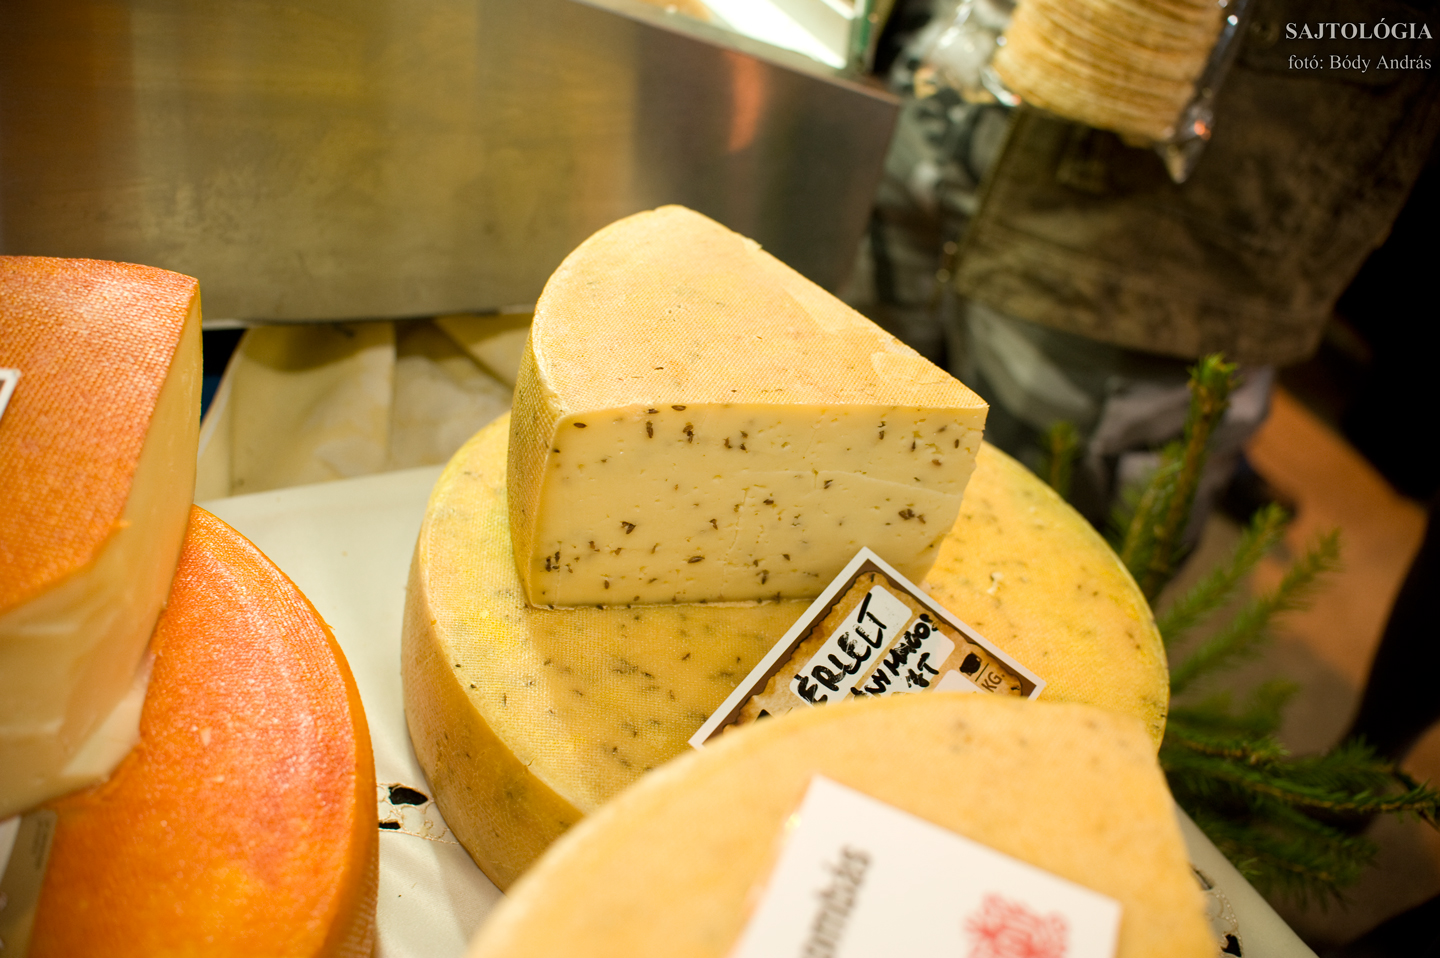 Tekerőpataki ‘Székely Falat‘ köménymagos sajt